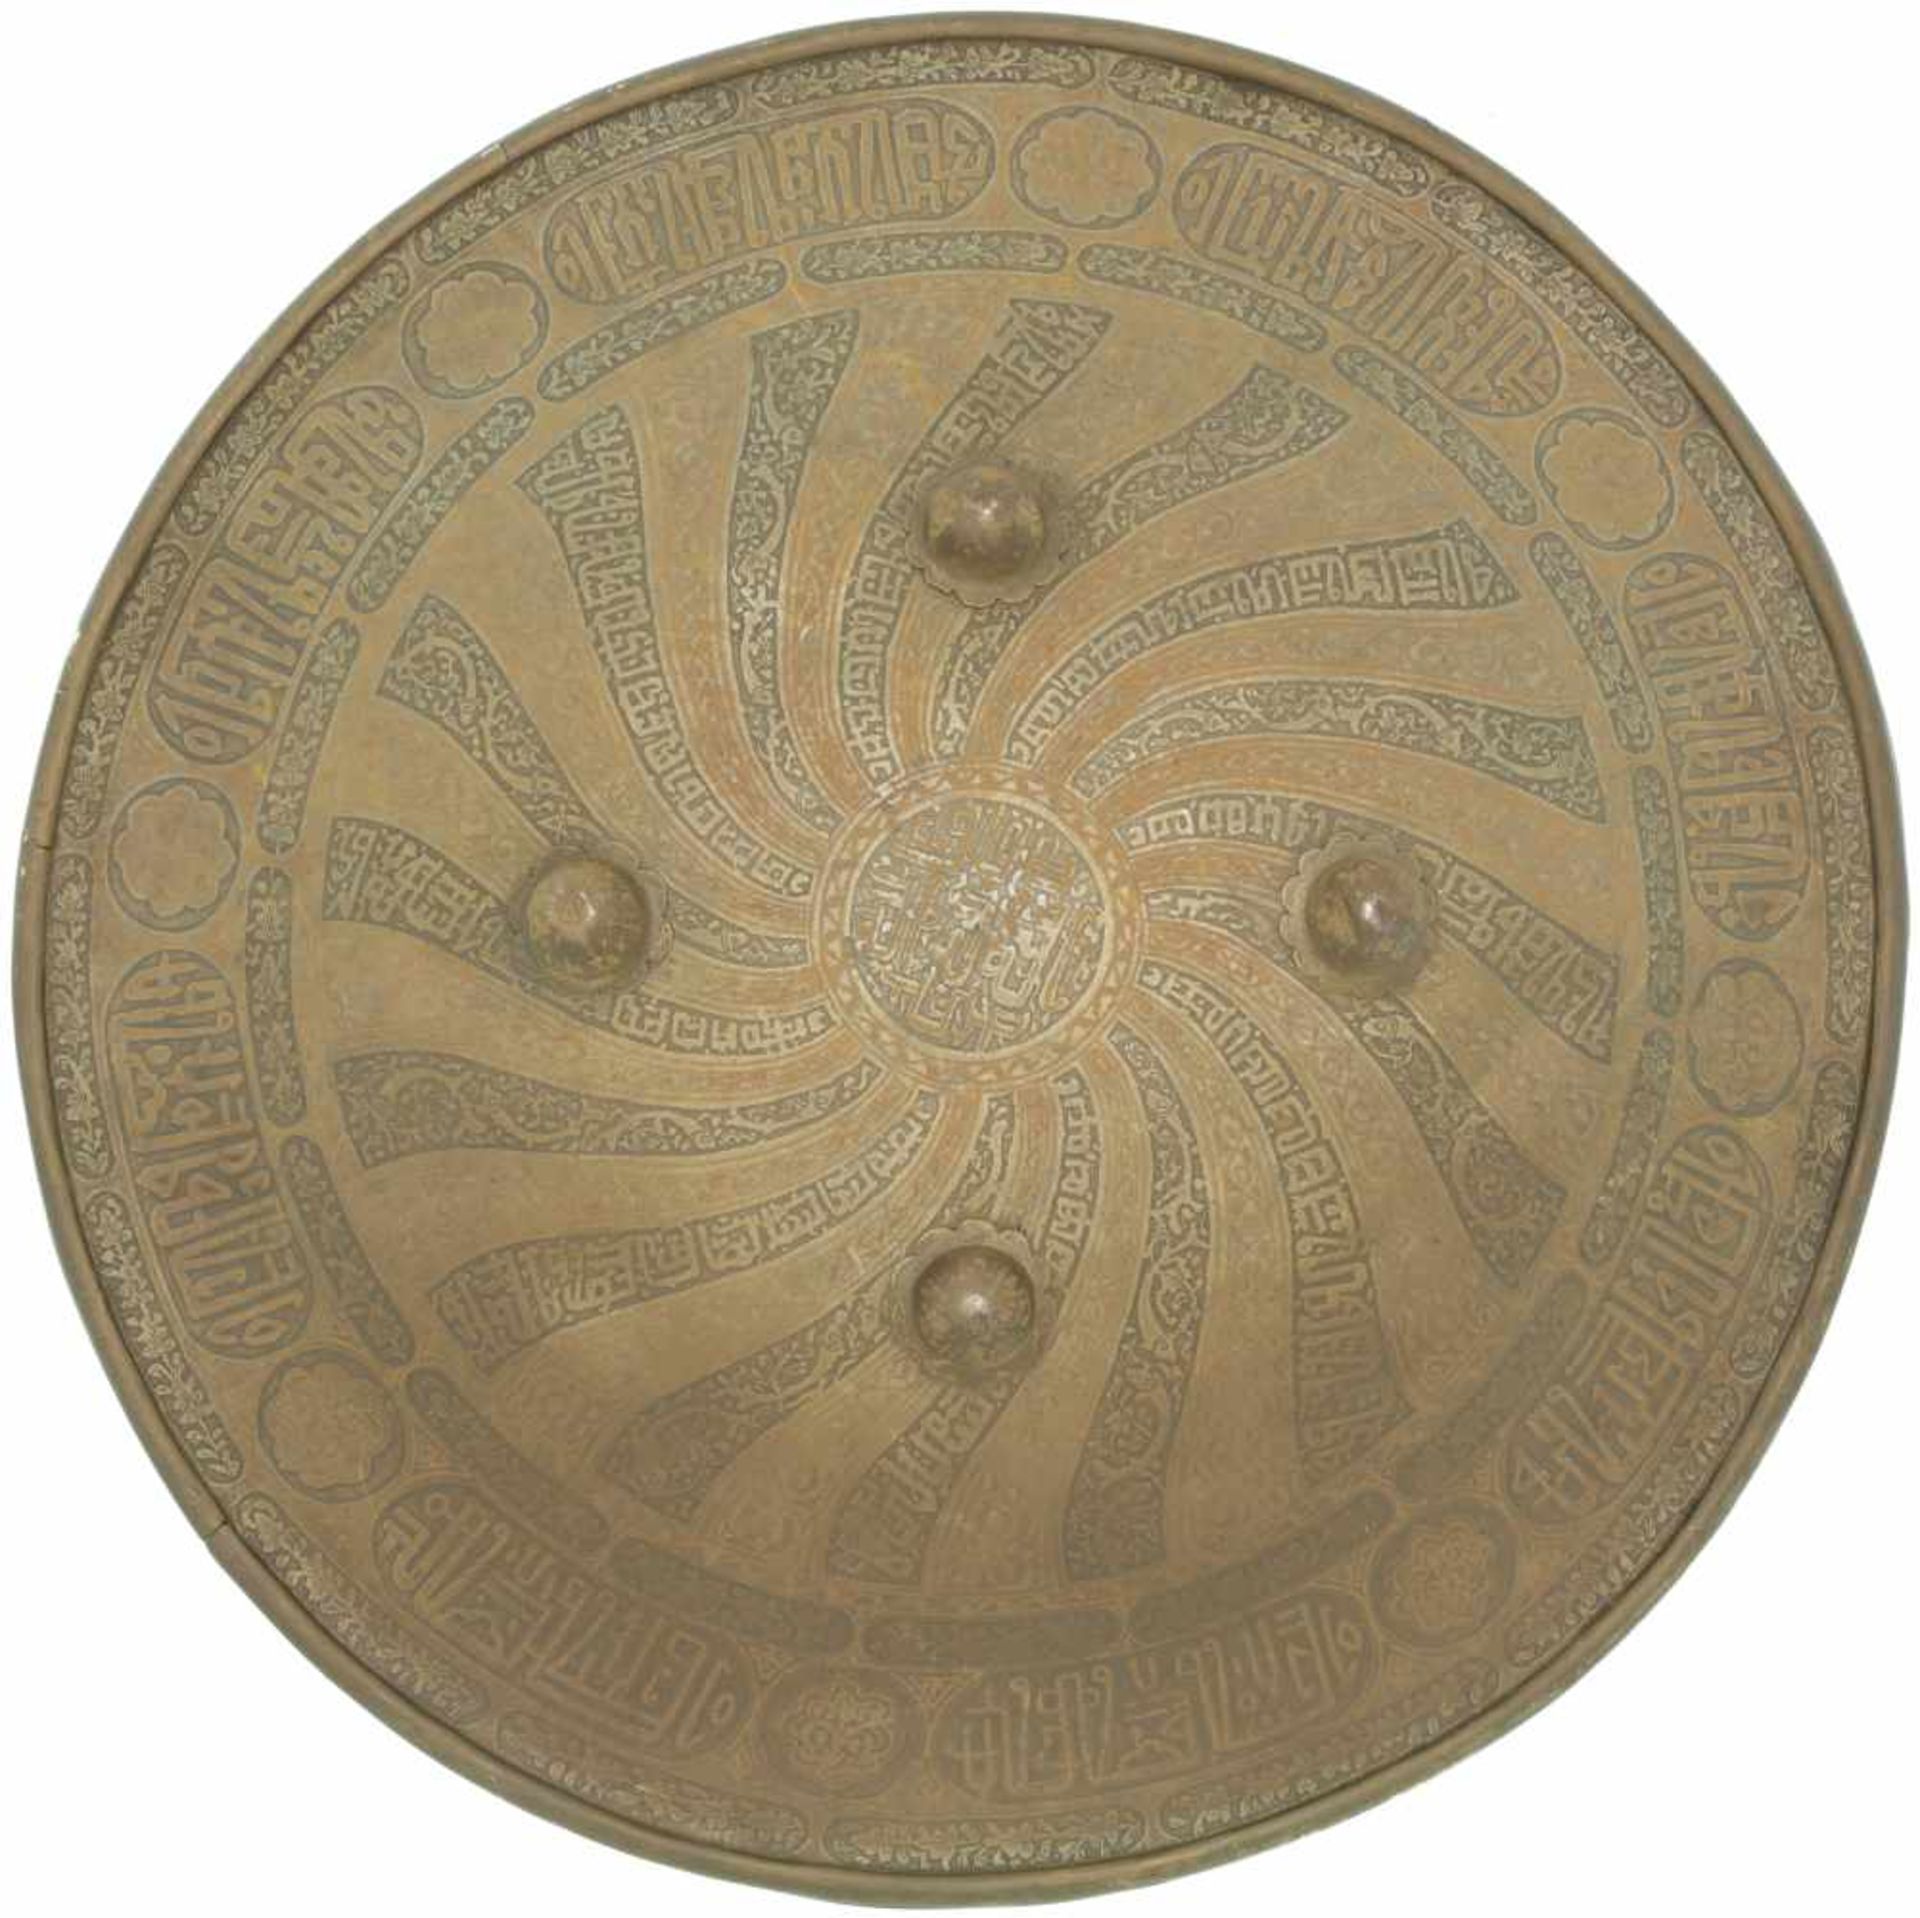 Rundschild mit 4 Buckeln, Indien 19-Jhdt. Durchmesser 455mm, kalottenförmig gebuckelt, Grundfläche - Bild 2 aus 2